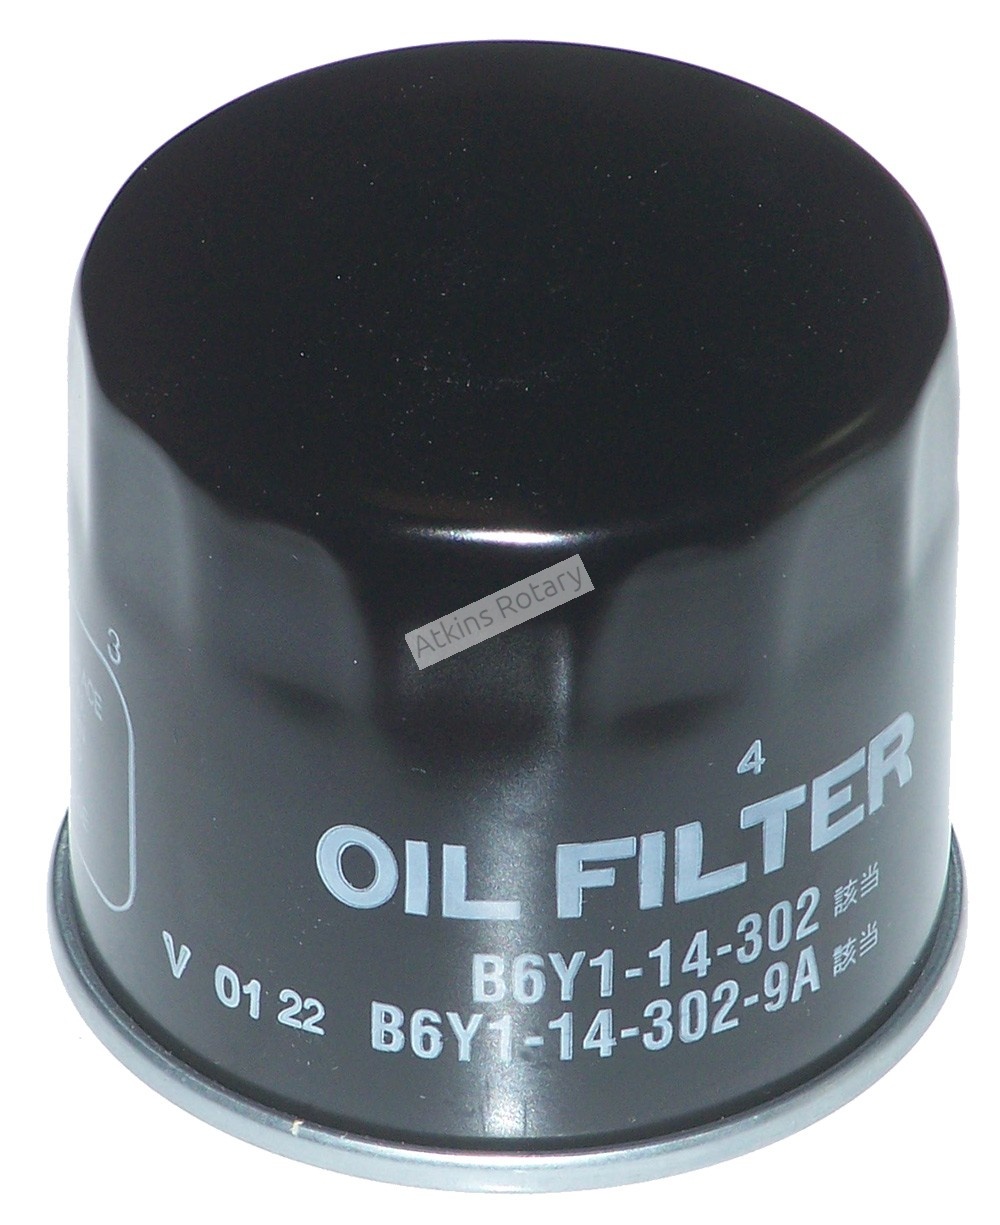 69-11 Rx7 & Rx8 Oil Filter (B6Y1-14-302)